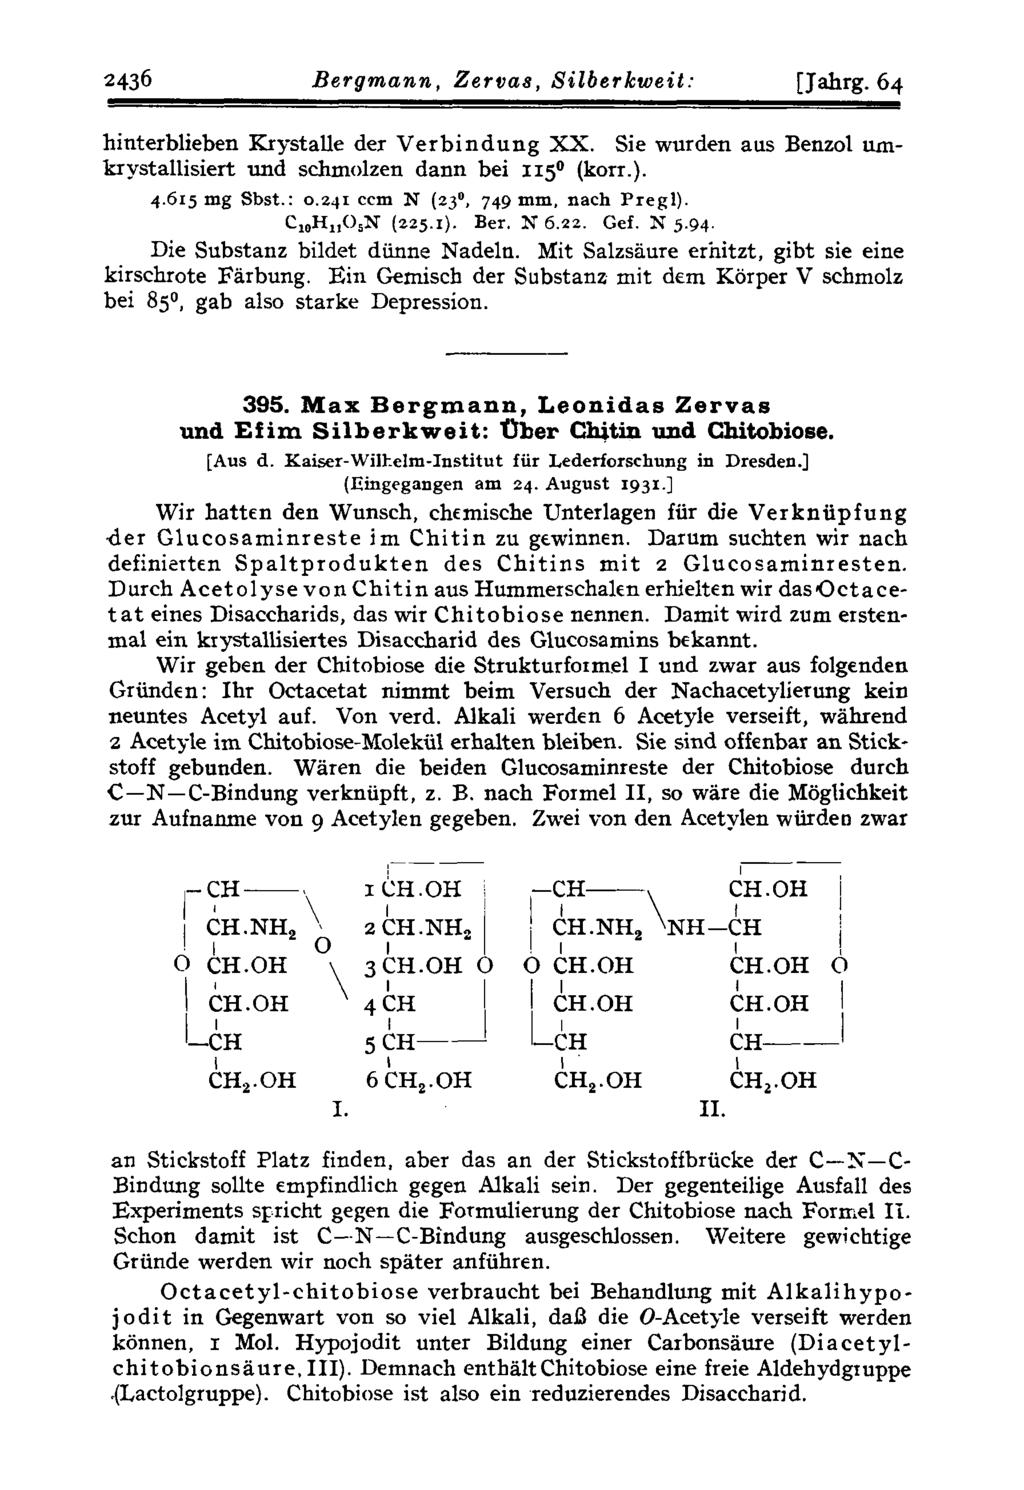 2436 Bergmann, Zervas, Silberkweit: [Jahra. 64 hinterblieben Krystalle der Verbindung XX. Sie wurden aus Benzol urnkrystallisiert und schmolzen dann bei 1150 (korr.). 4.615 mg Sbst.: o.